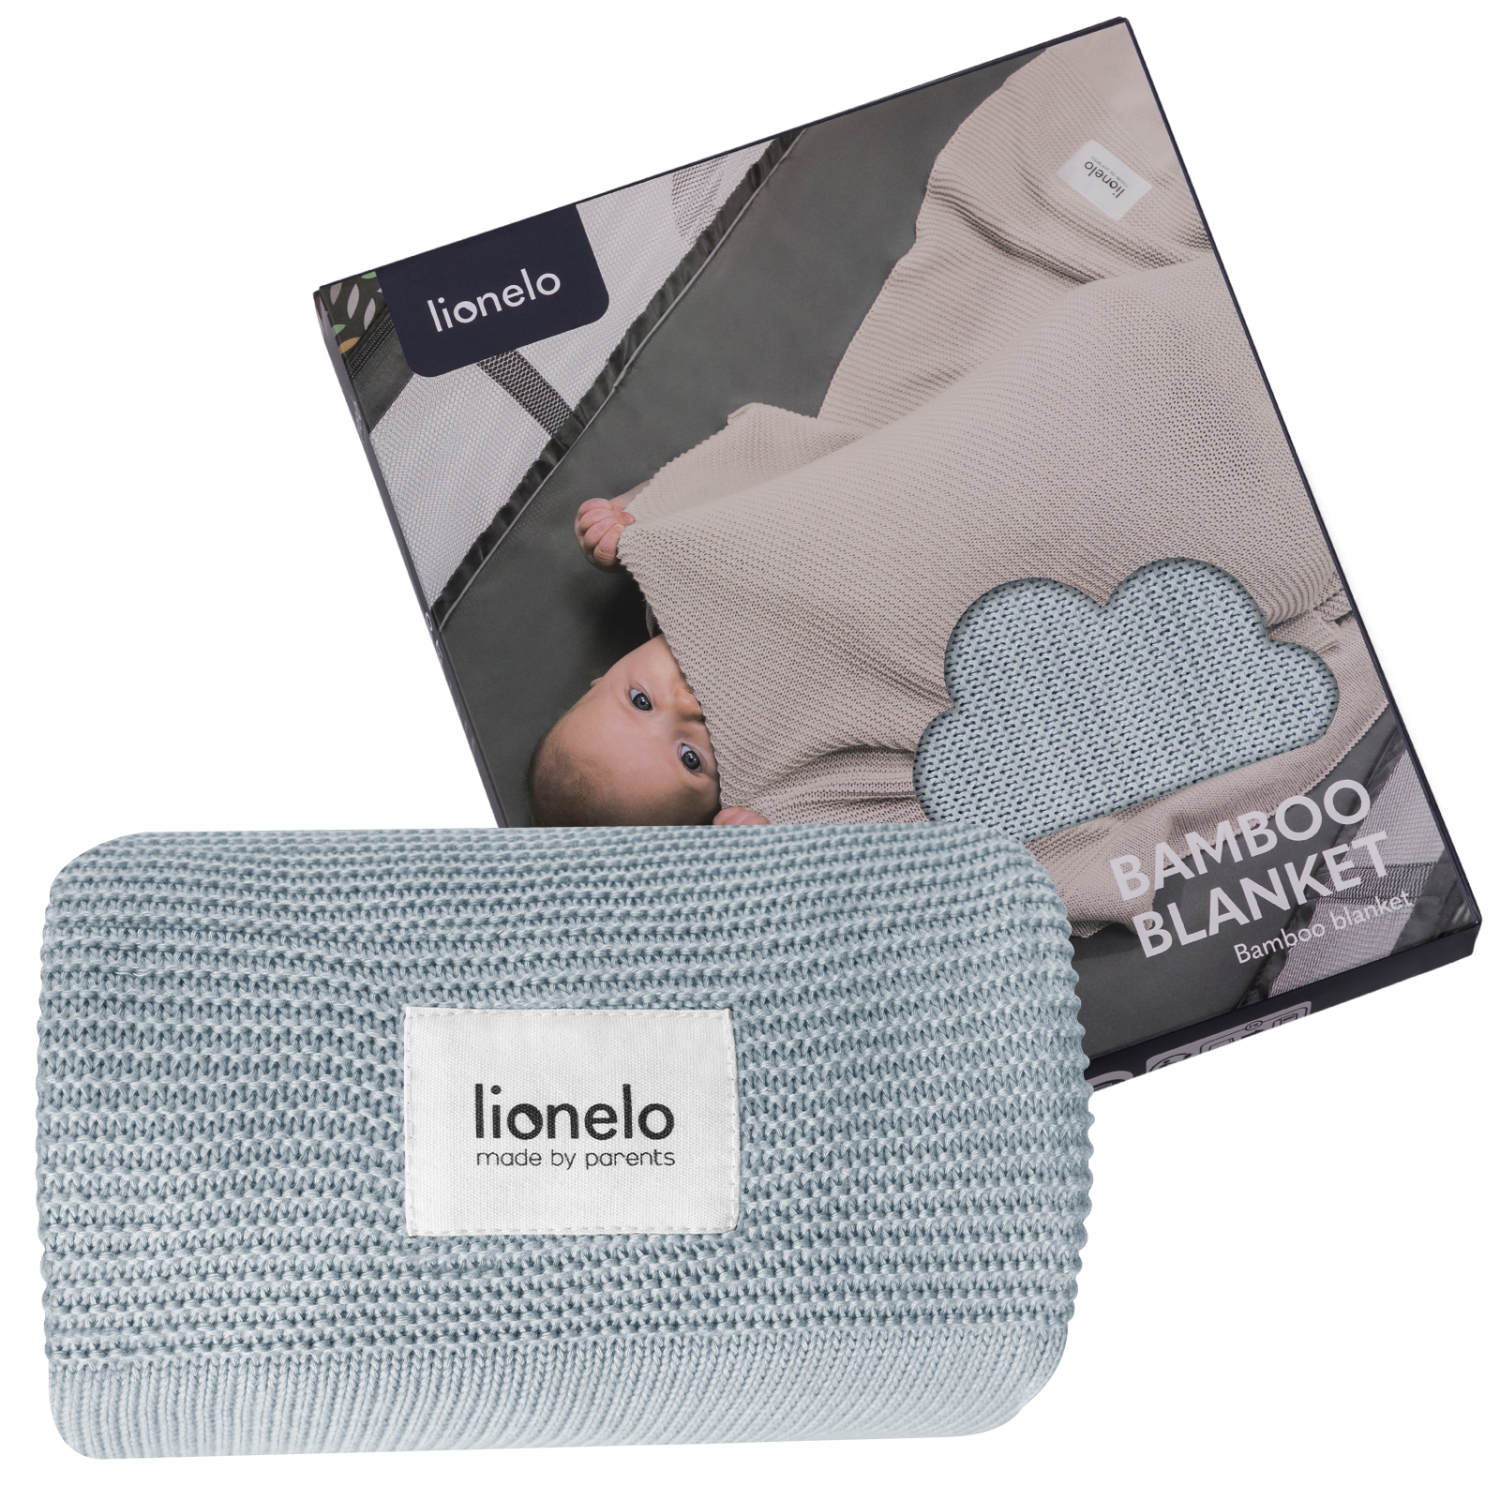 Lionelo Bamboo Blanket Grey — mantita de bambú